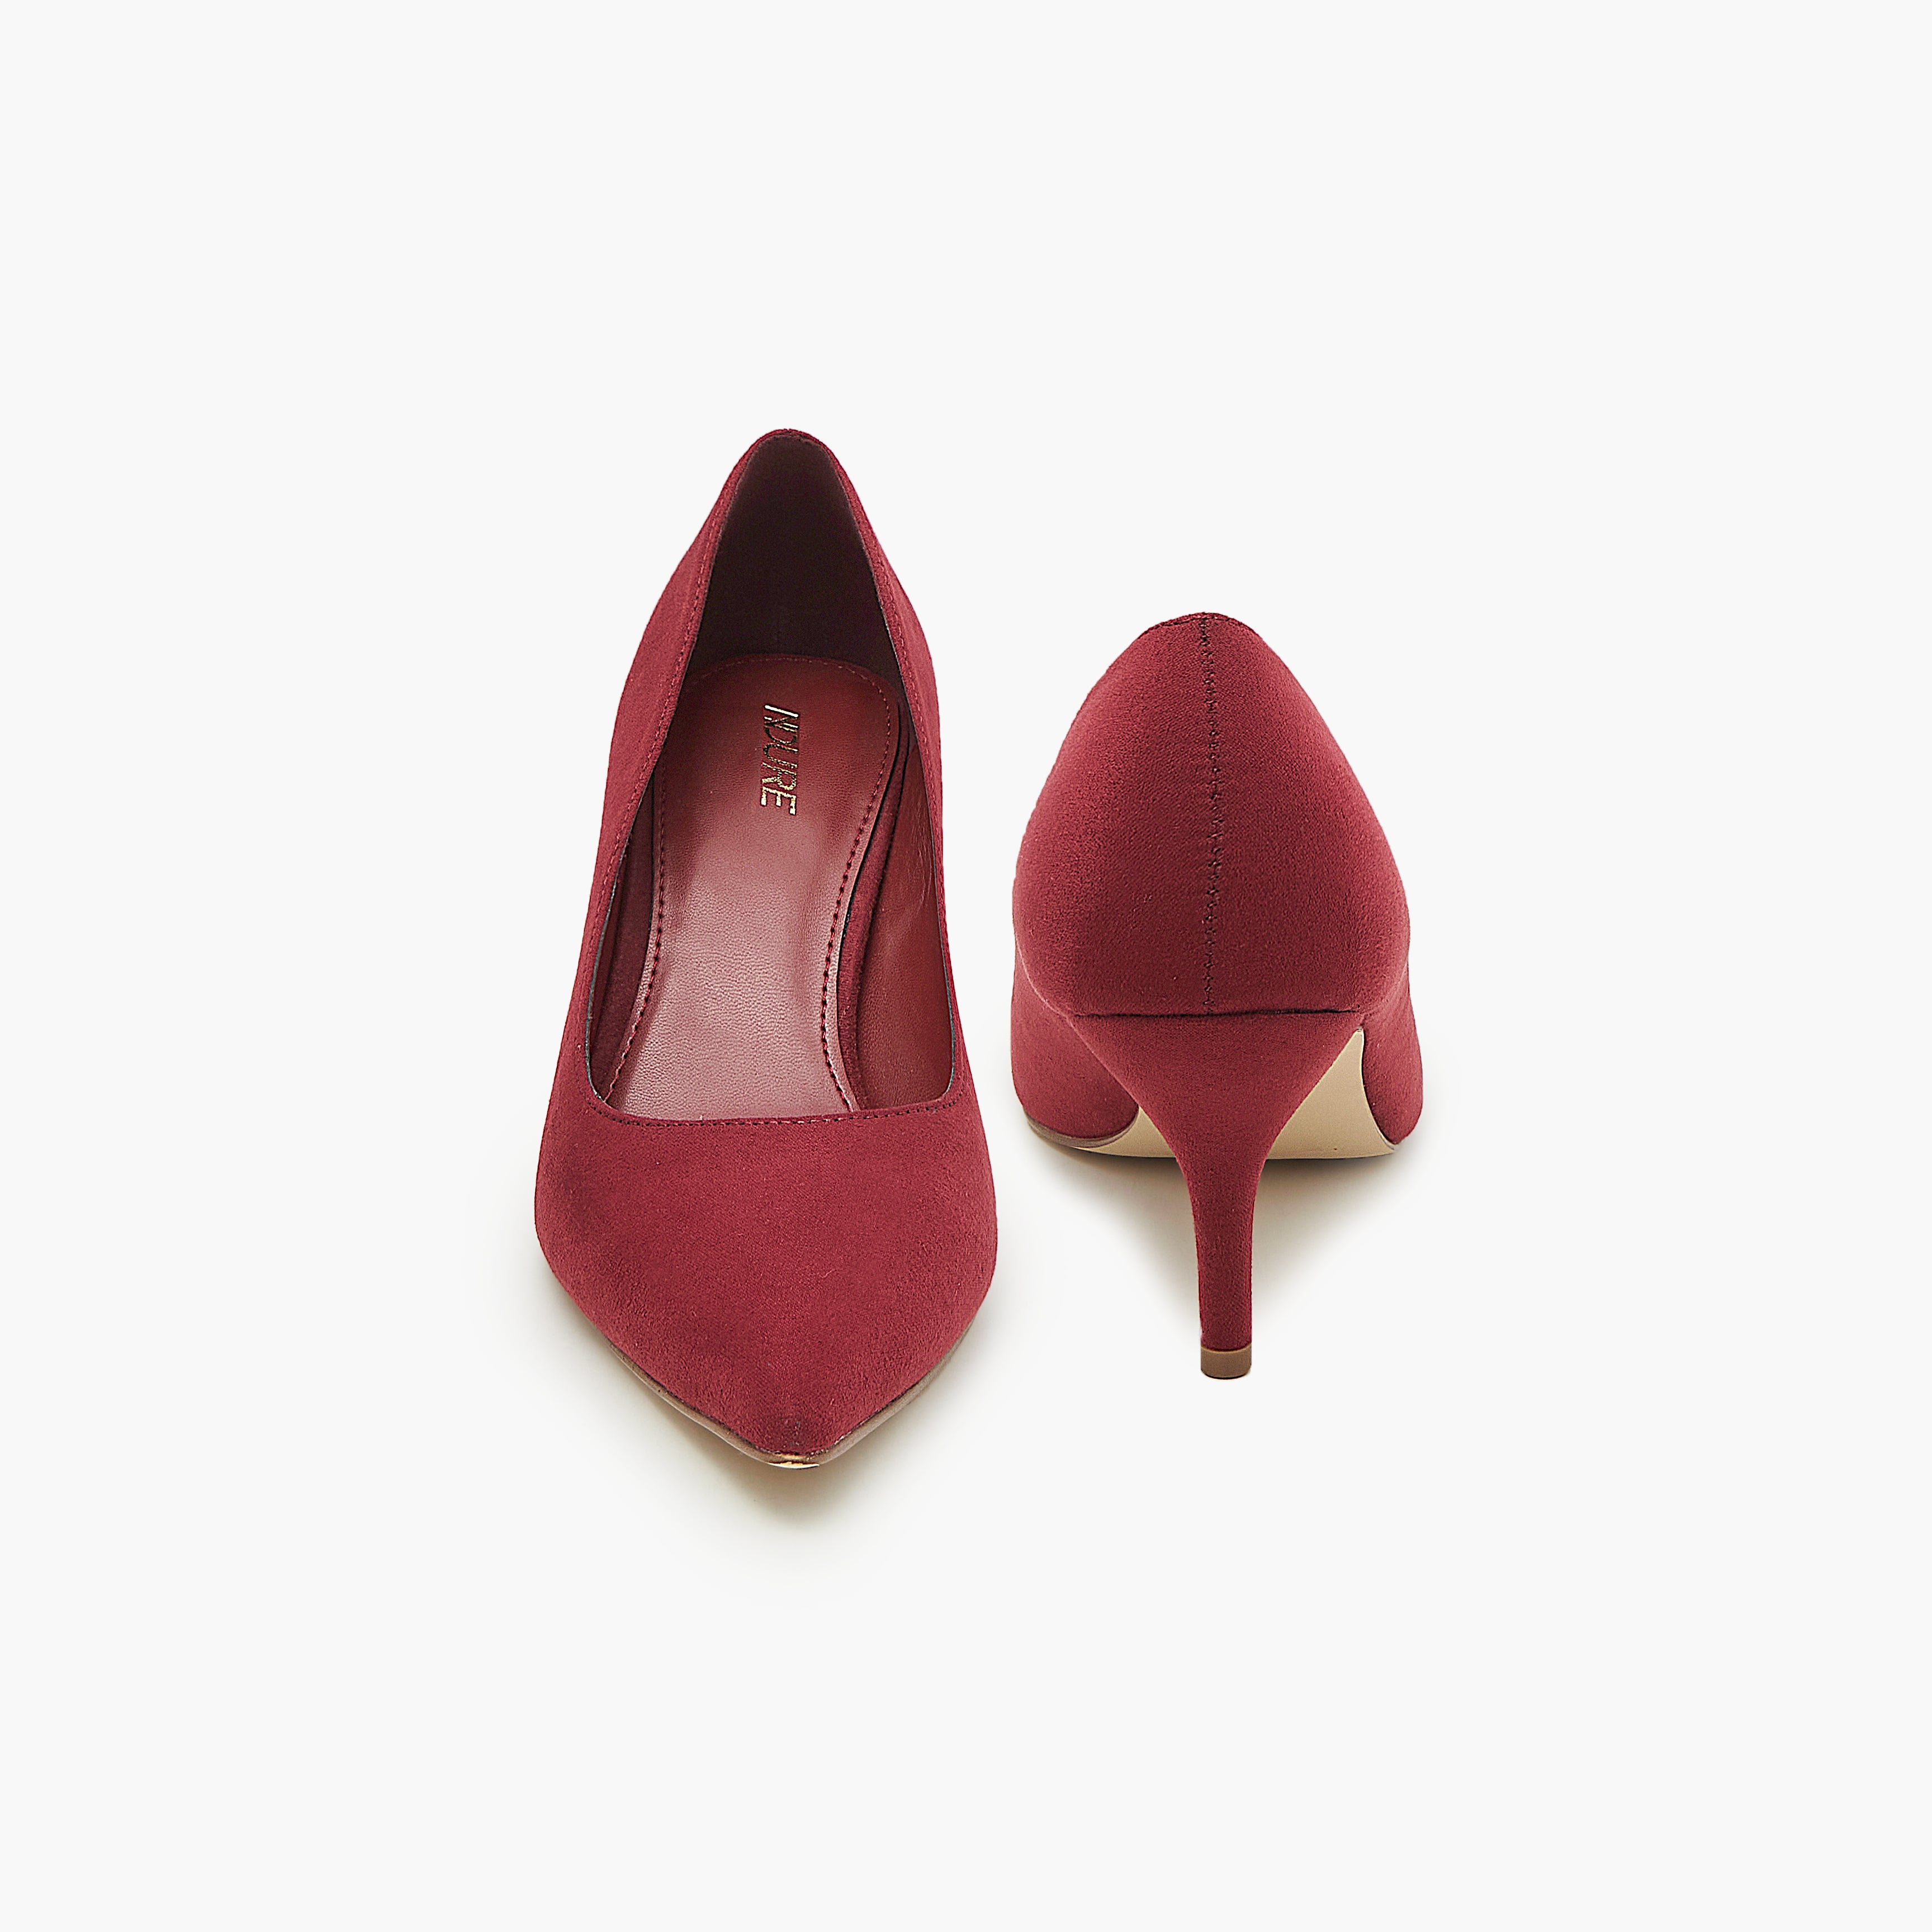 Women Low Heel pointed toe Casual Shoes | Low heel pumps, Pumps heels, Heels